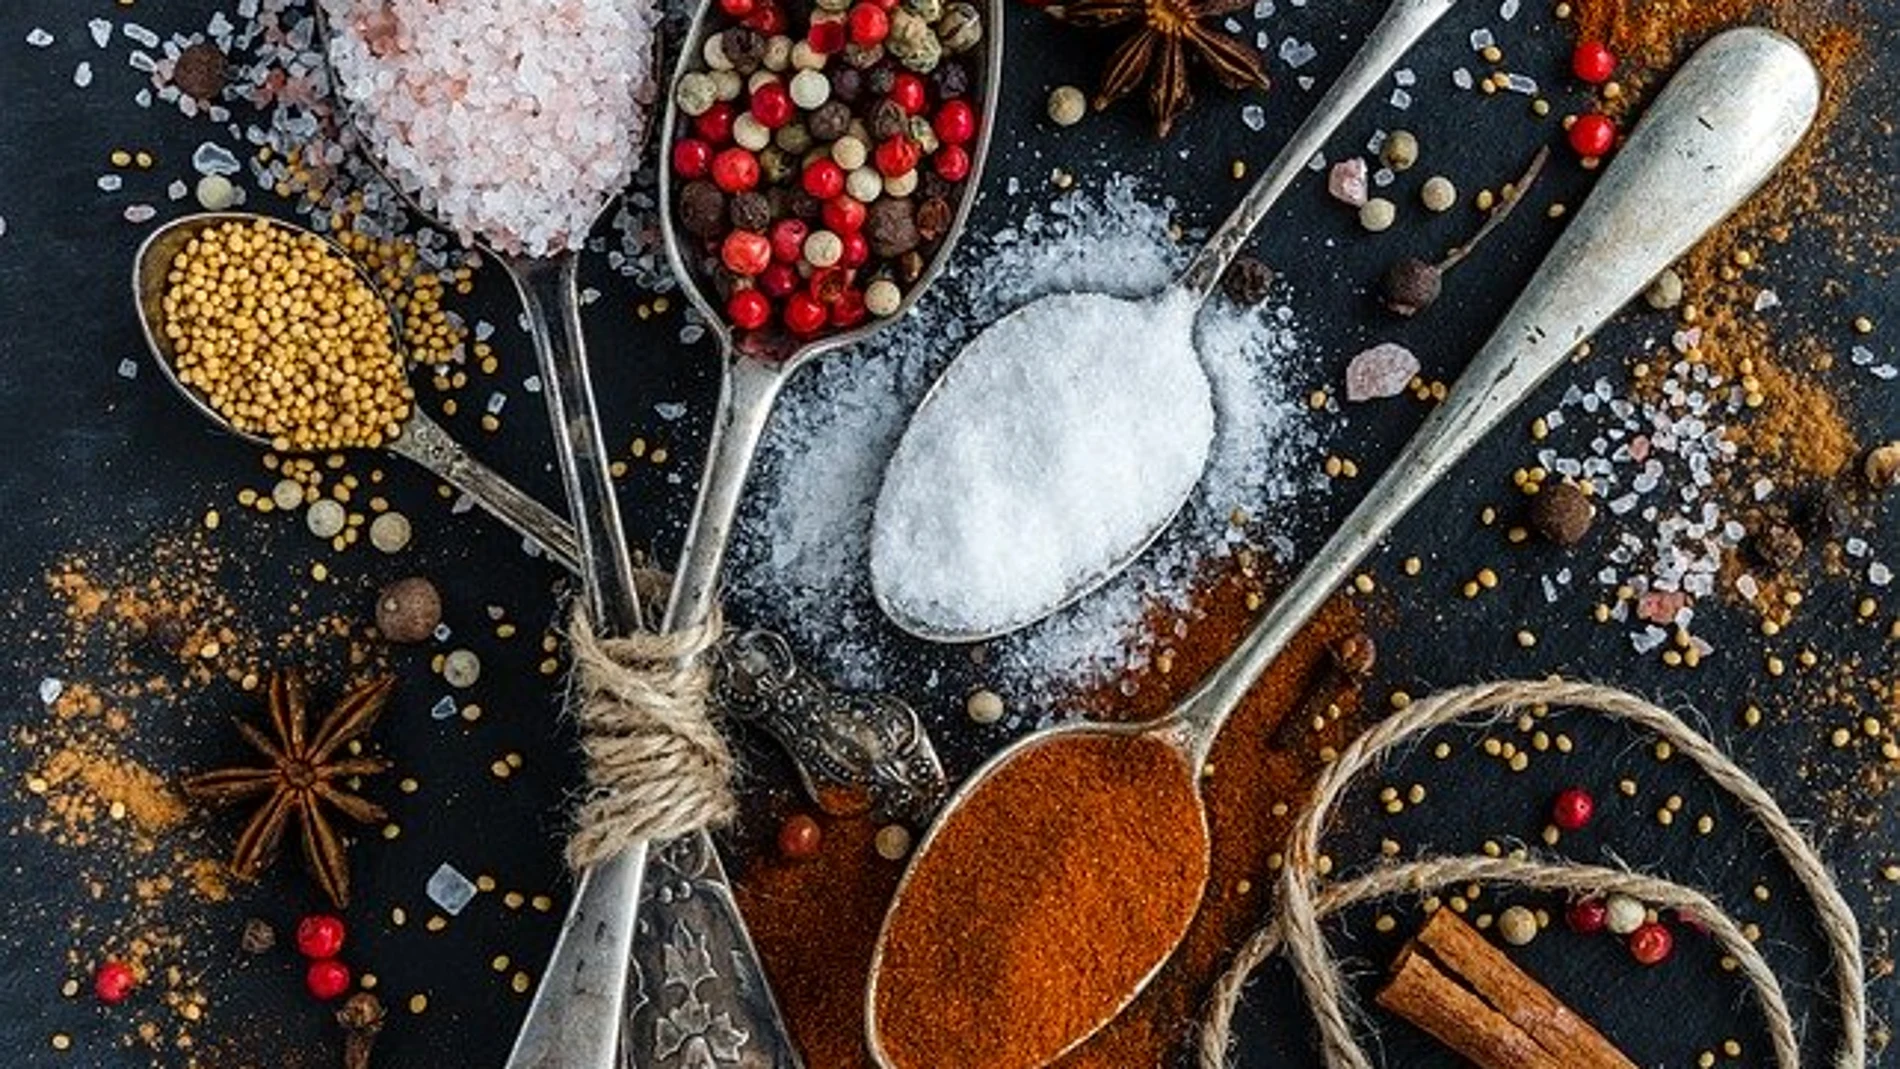 La sal es el condimento más antiguo que se conoce. Es un elemento básico de la gastronomía mundial y su utilización es más compleja de lo que se cree ya que hace que aumente o disminuya la capacidad de otros sentidos que intervienen en la apreciación del gusto.